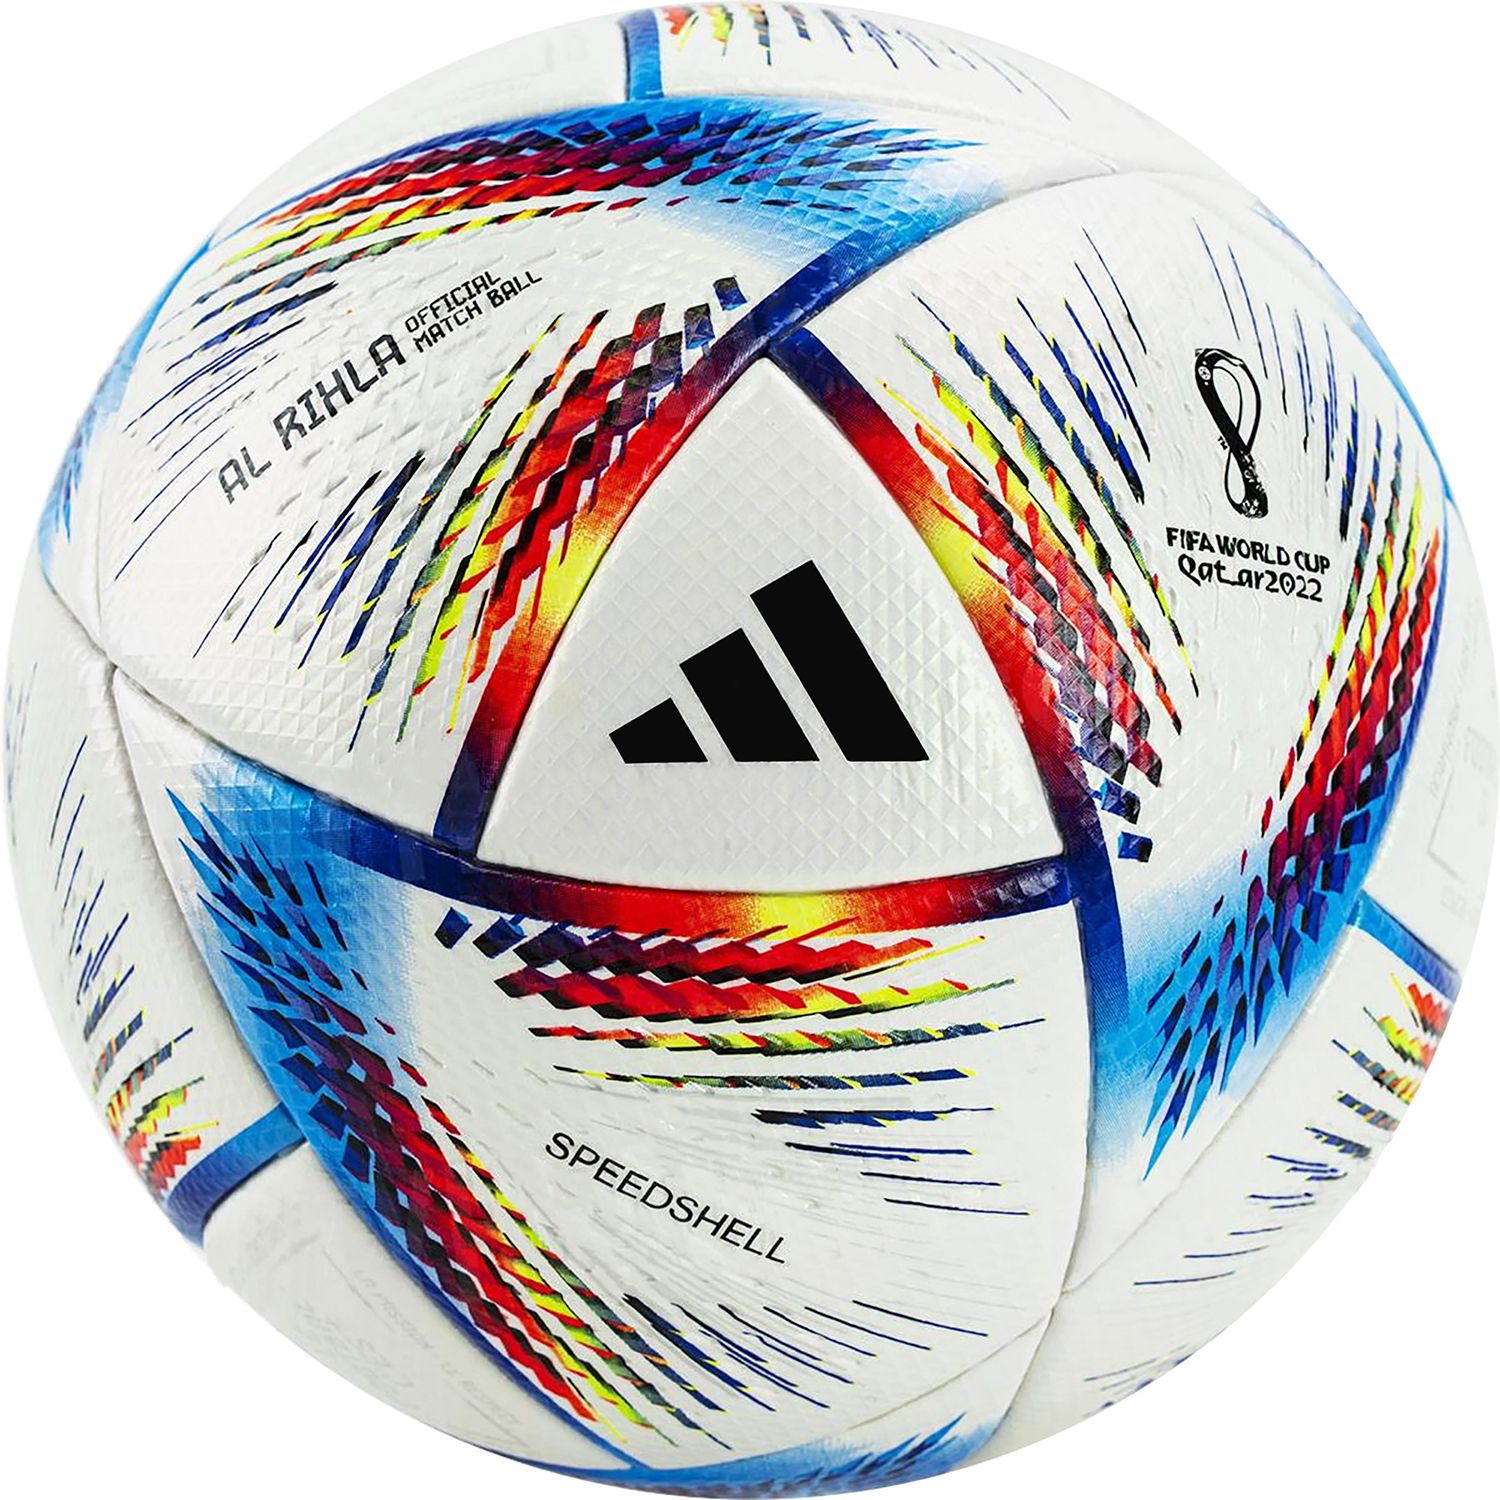 Adidas / FIFA World Cup Qatar 2022 Al Rihla Jumbo Soccer Ball